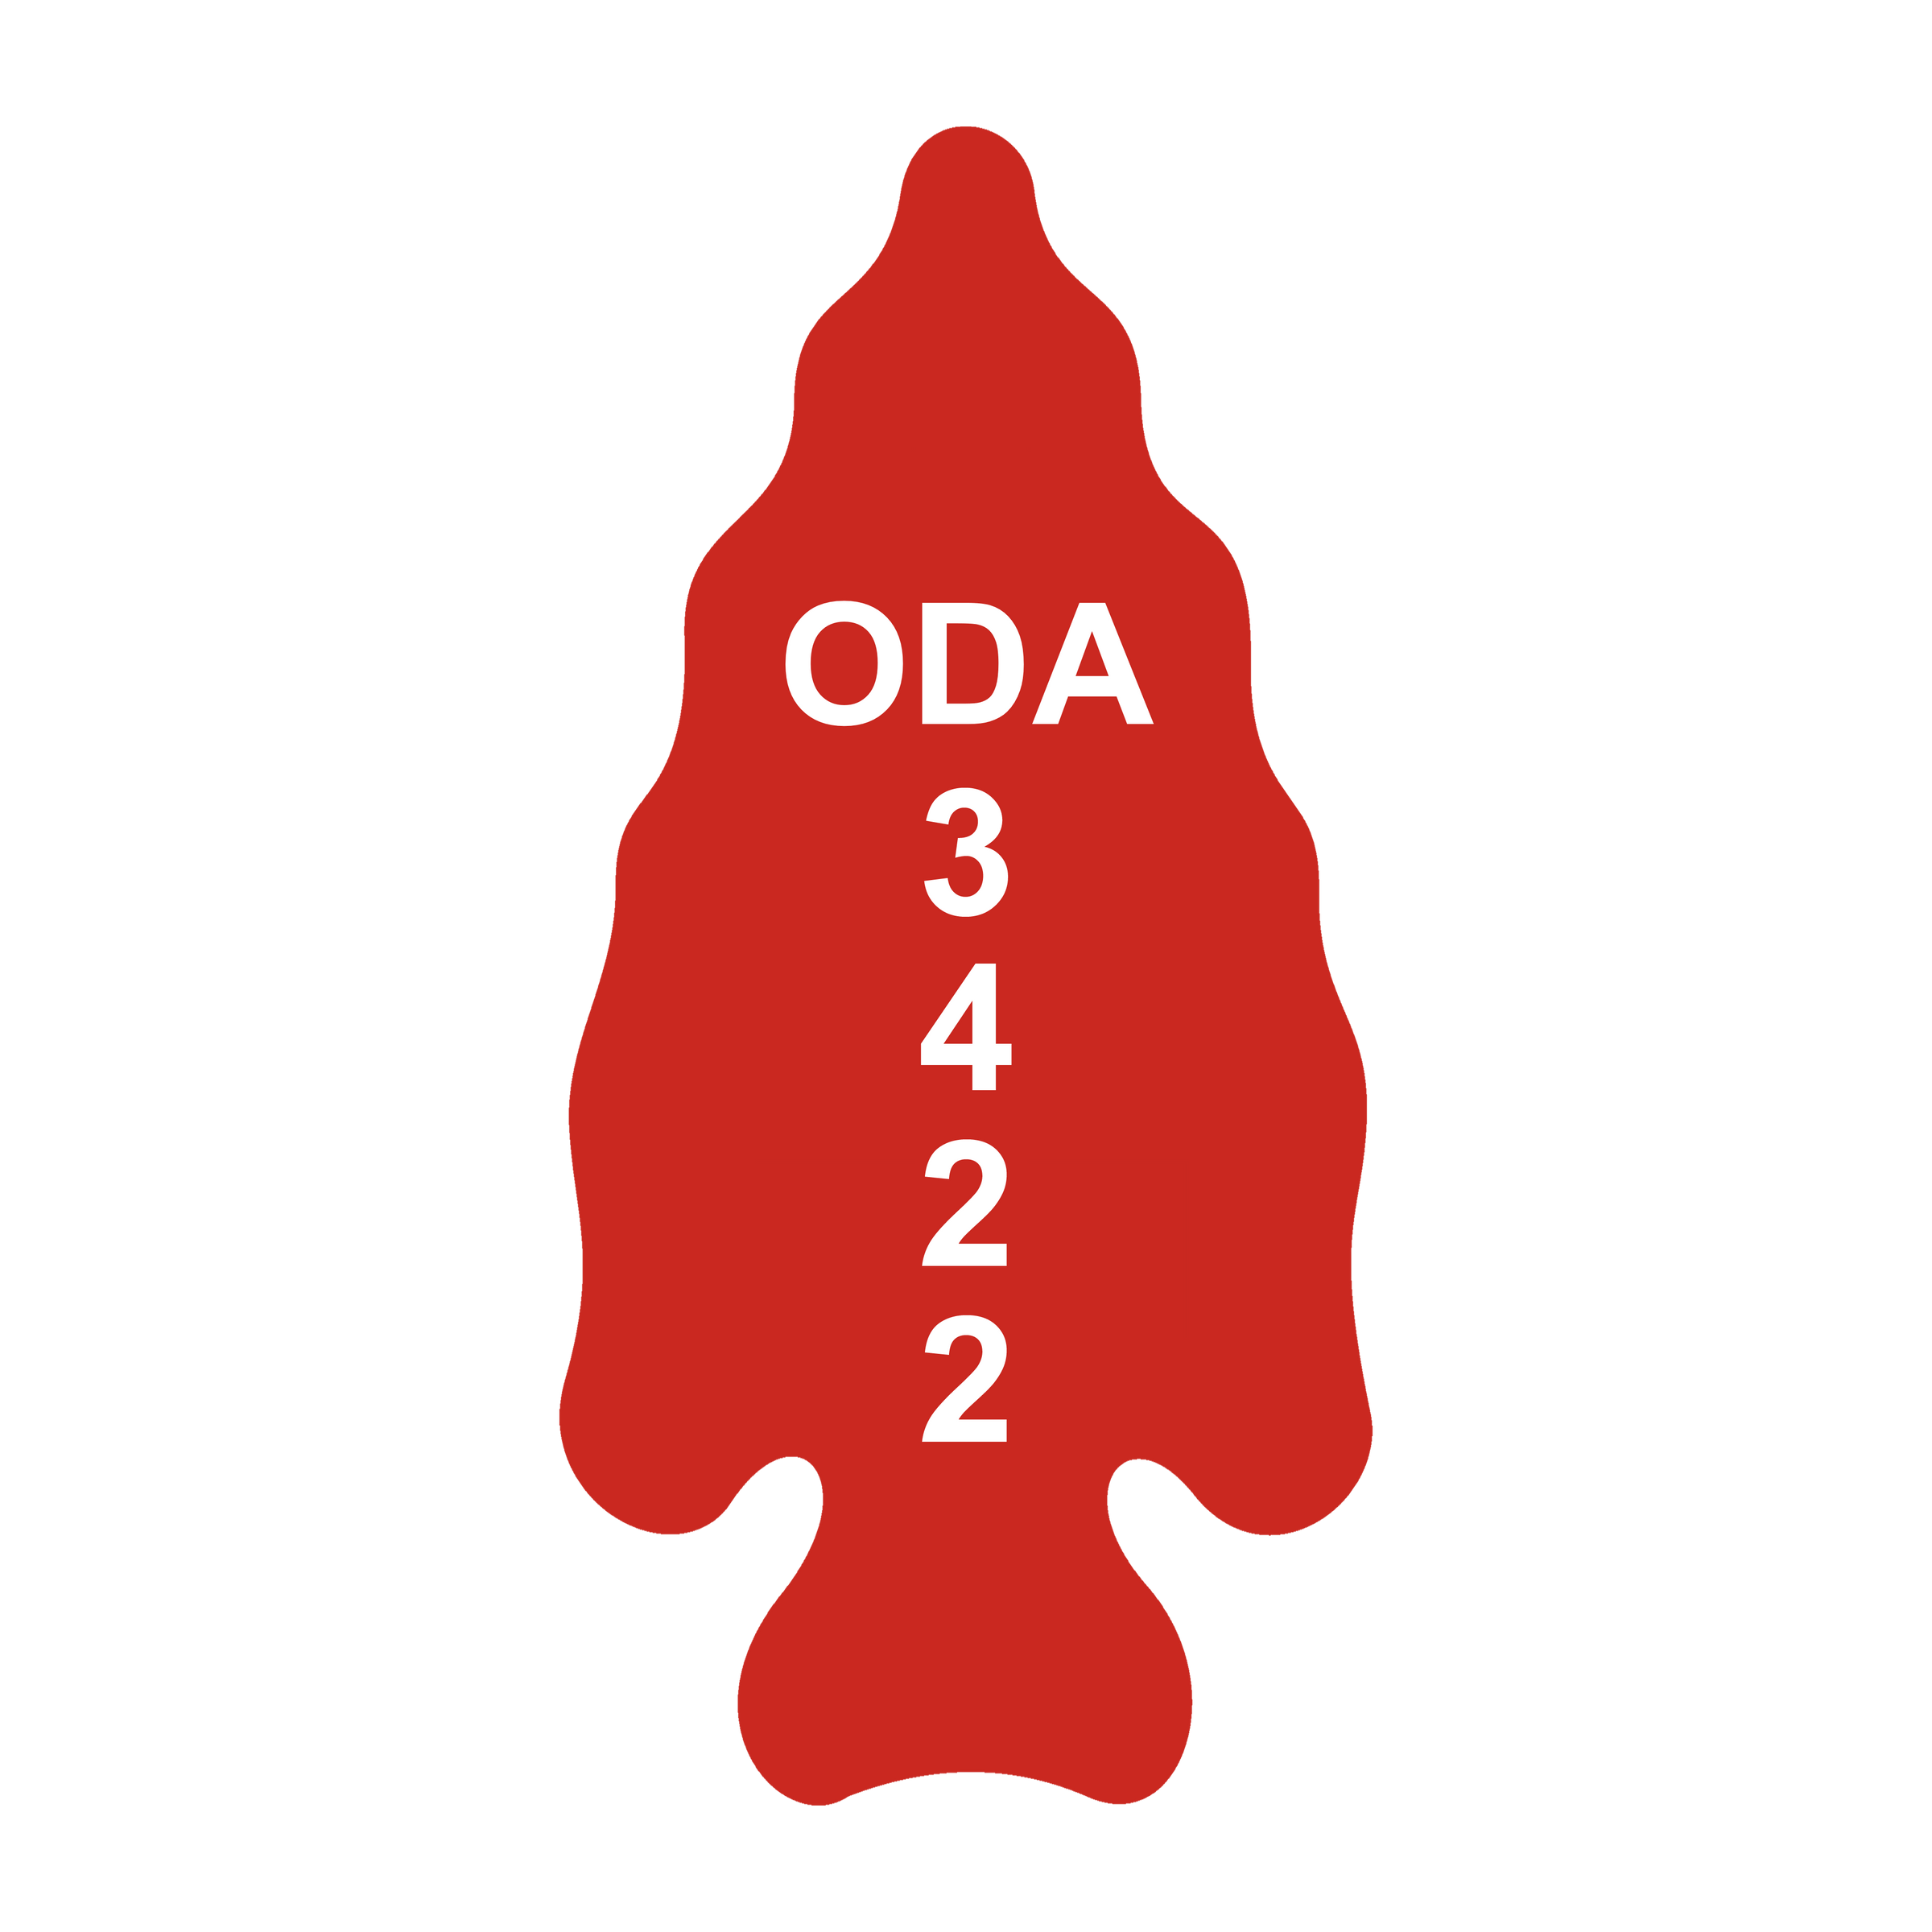 ODA 3422